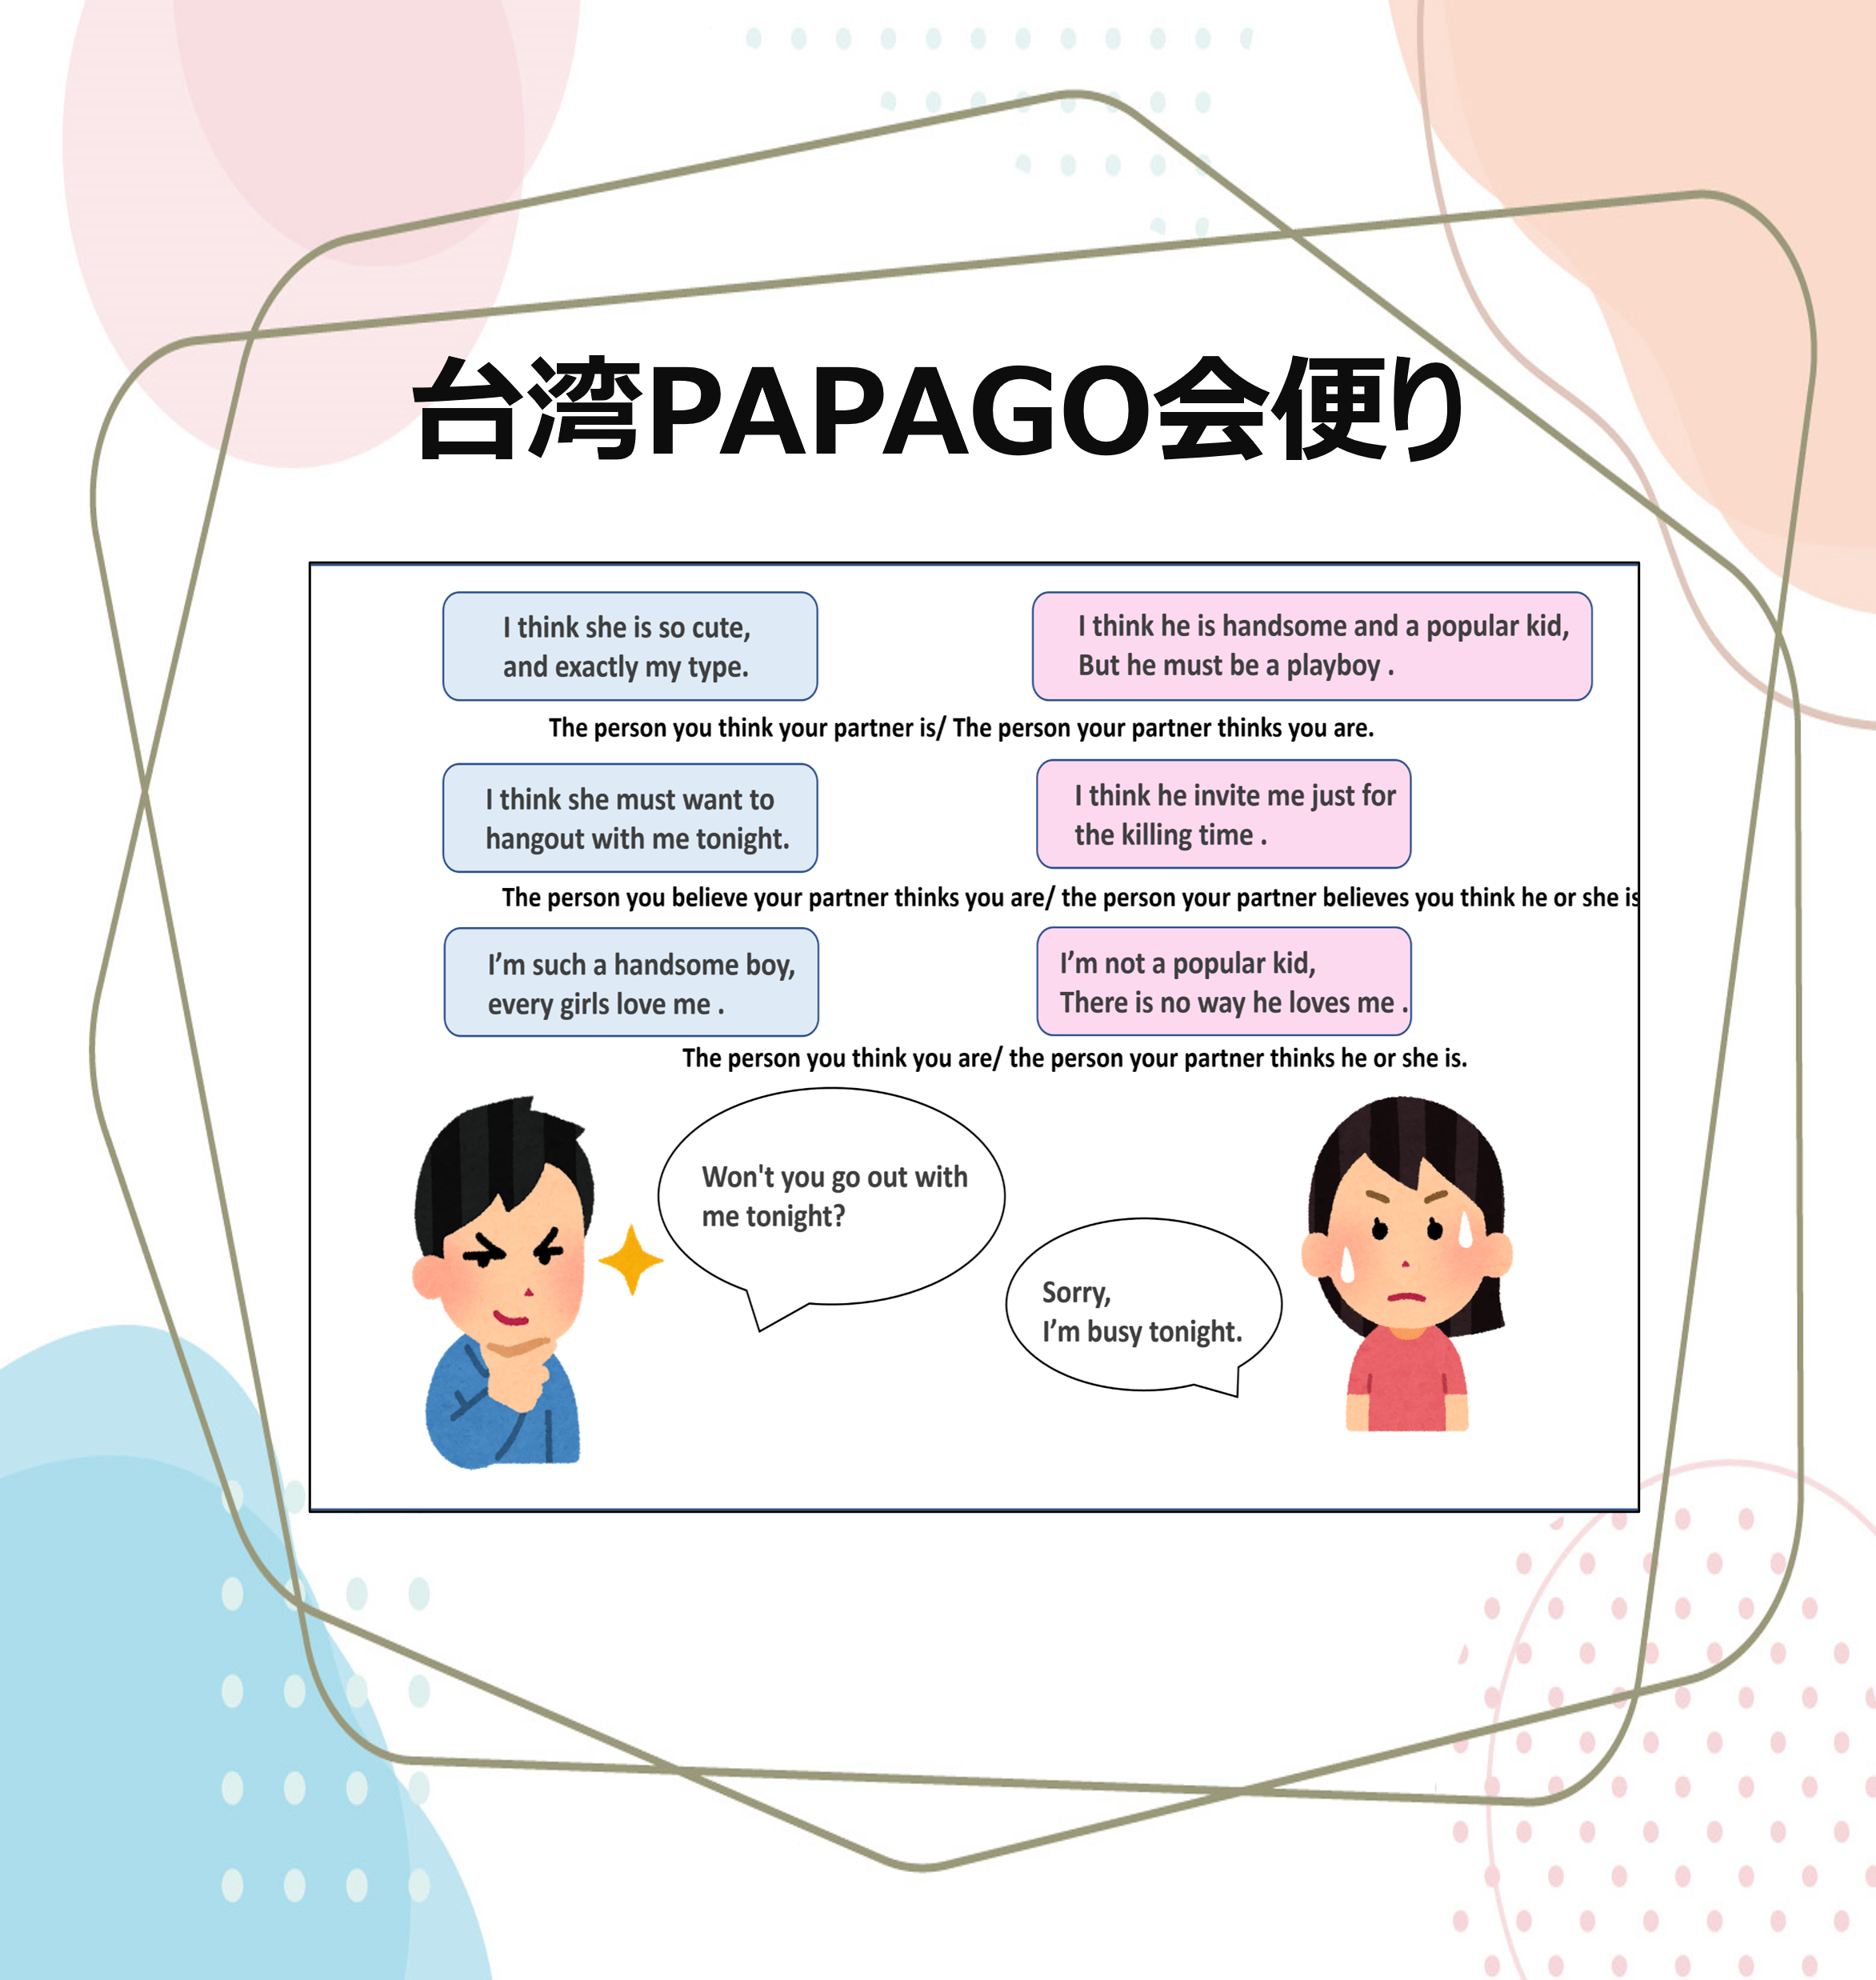 台湾PAPAGO会便り 台湾留学,大学進学,台湾語学短期留学|PAPAGO遊学村